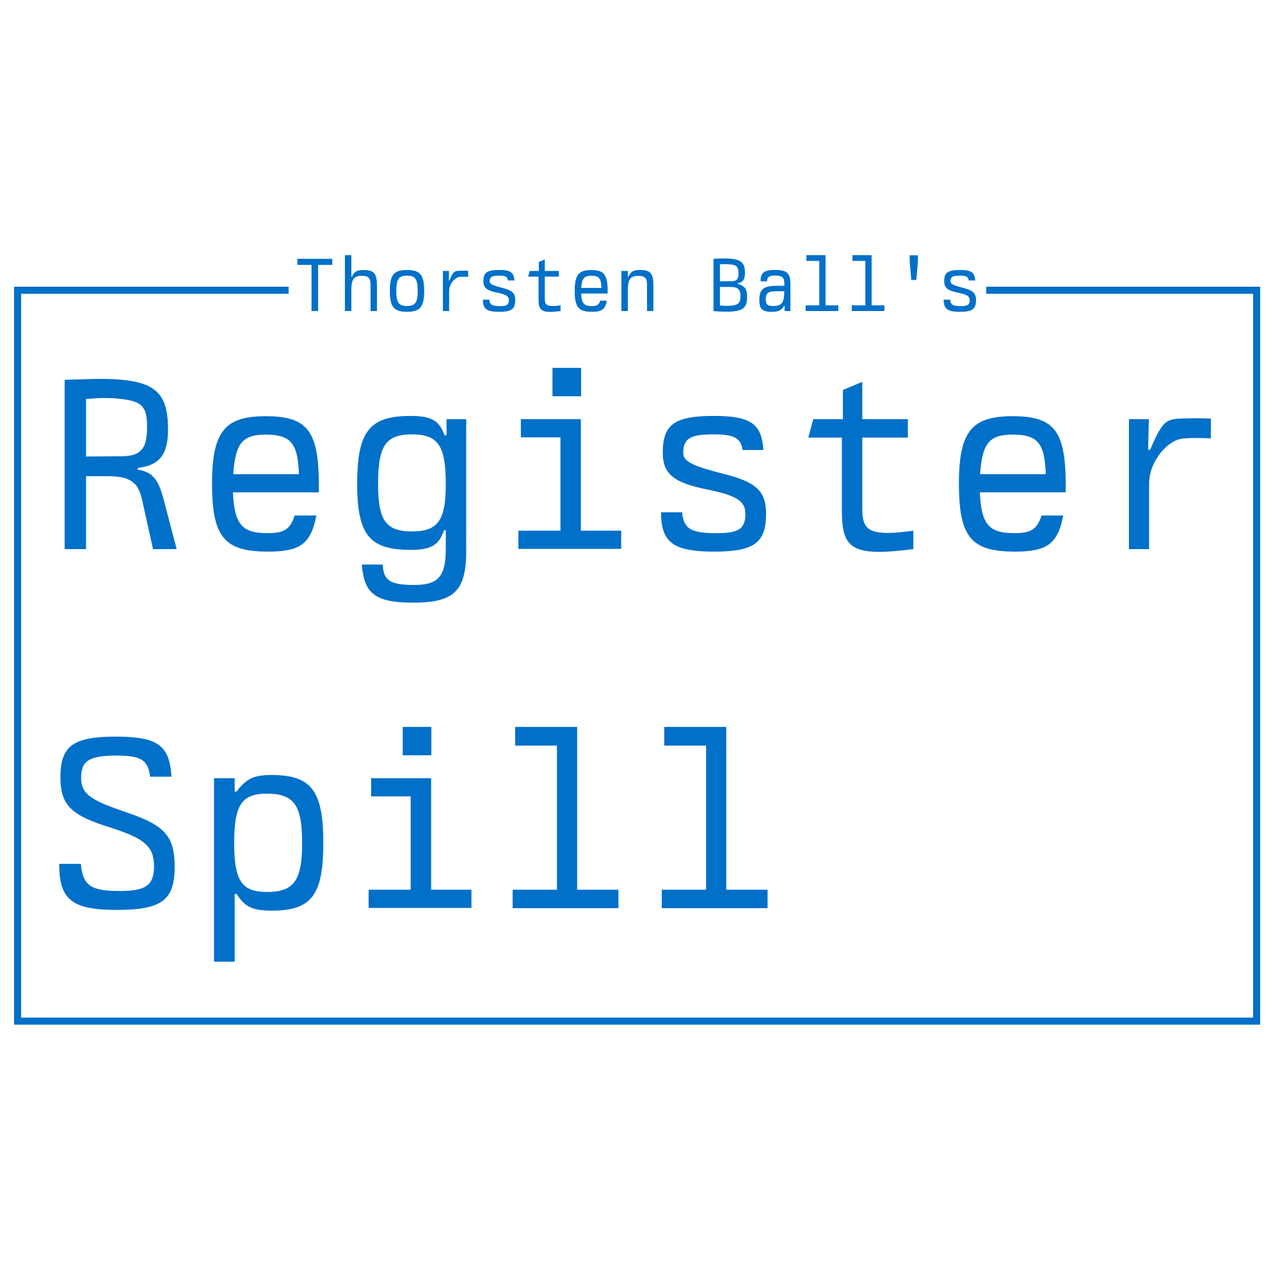 Register Spill